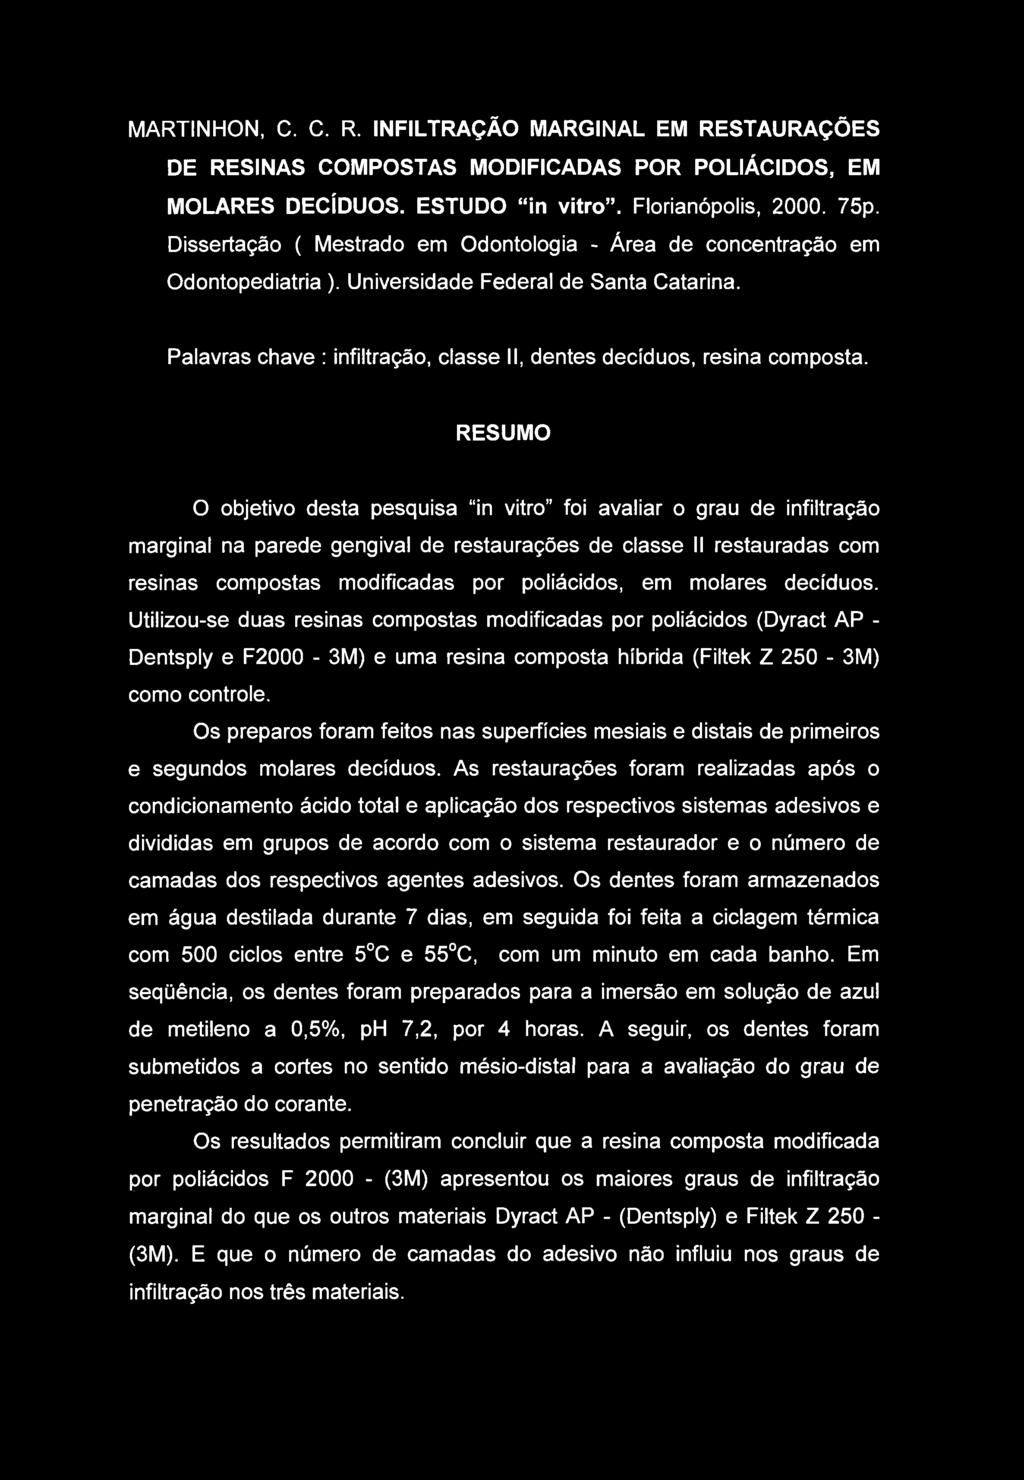 MARTINHON, C. C. R. INFILTRAÇÃO MARGINAL EM RESTAURAÇÕES DE RESINAS COMPOSTAS MODIFICADAS POR POLIÁCIDOS, EM MOLARES DECÍDUOS. ESTUDO in vitro. Florianópolis, 2000. 75p.